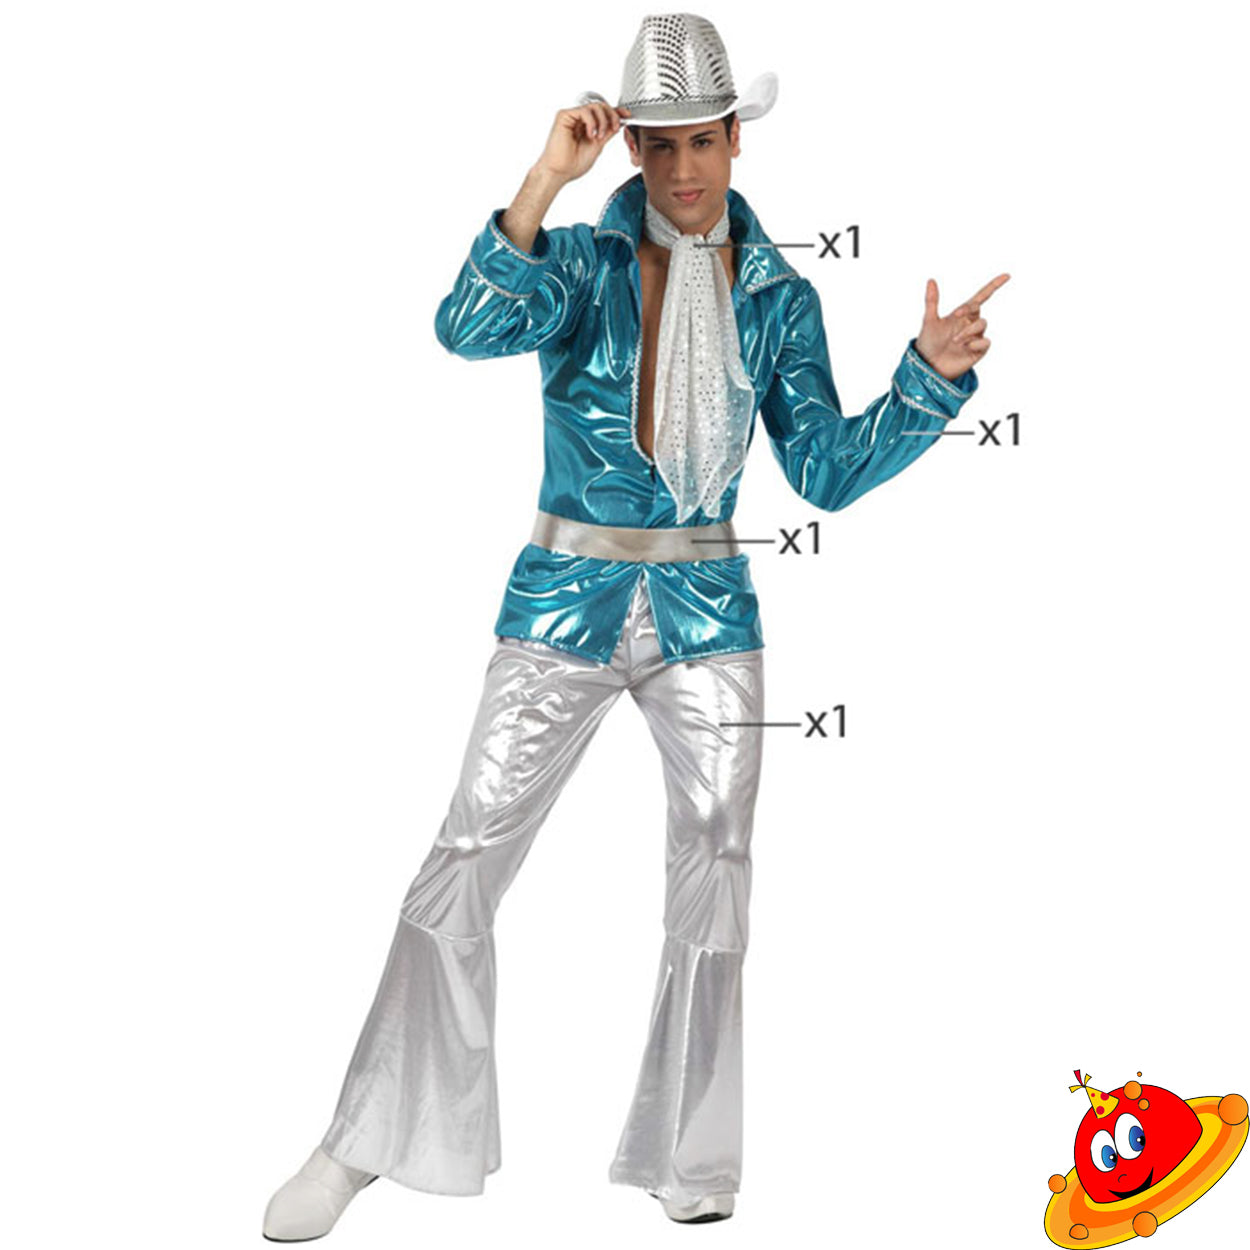 Costume Uomo Disco 80 Abba Set Azzurro Tg 48/58